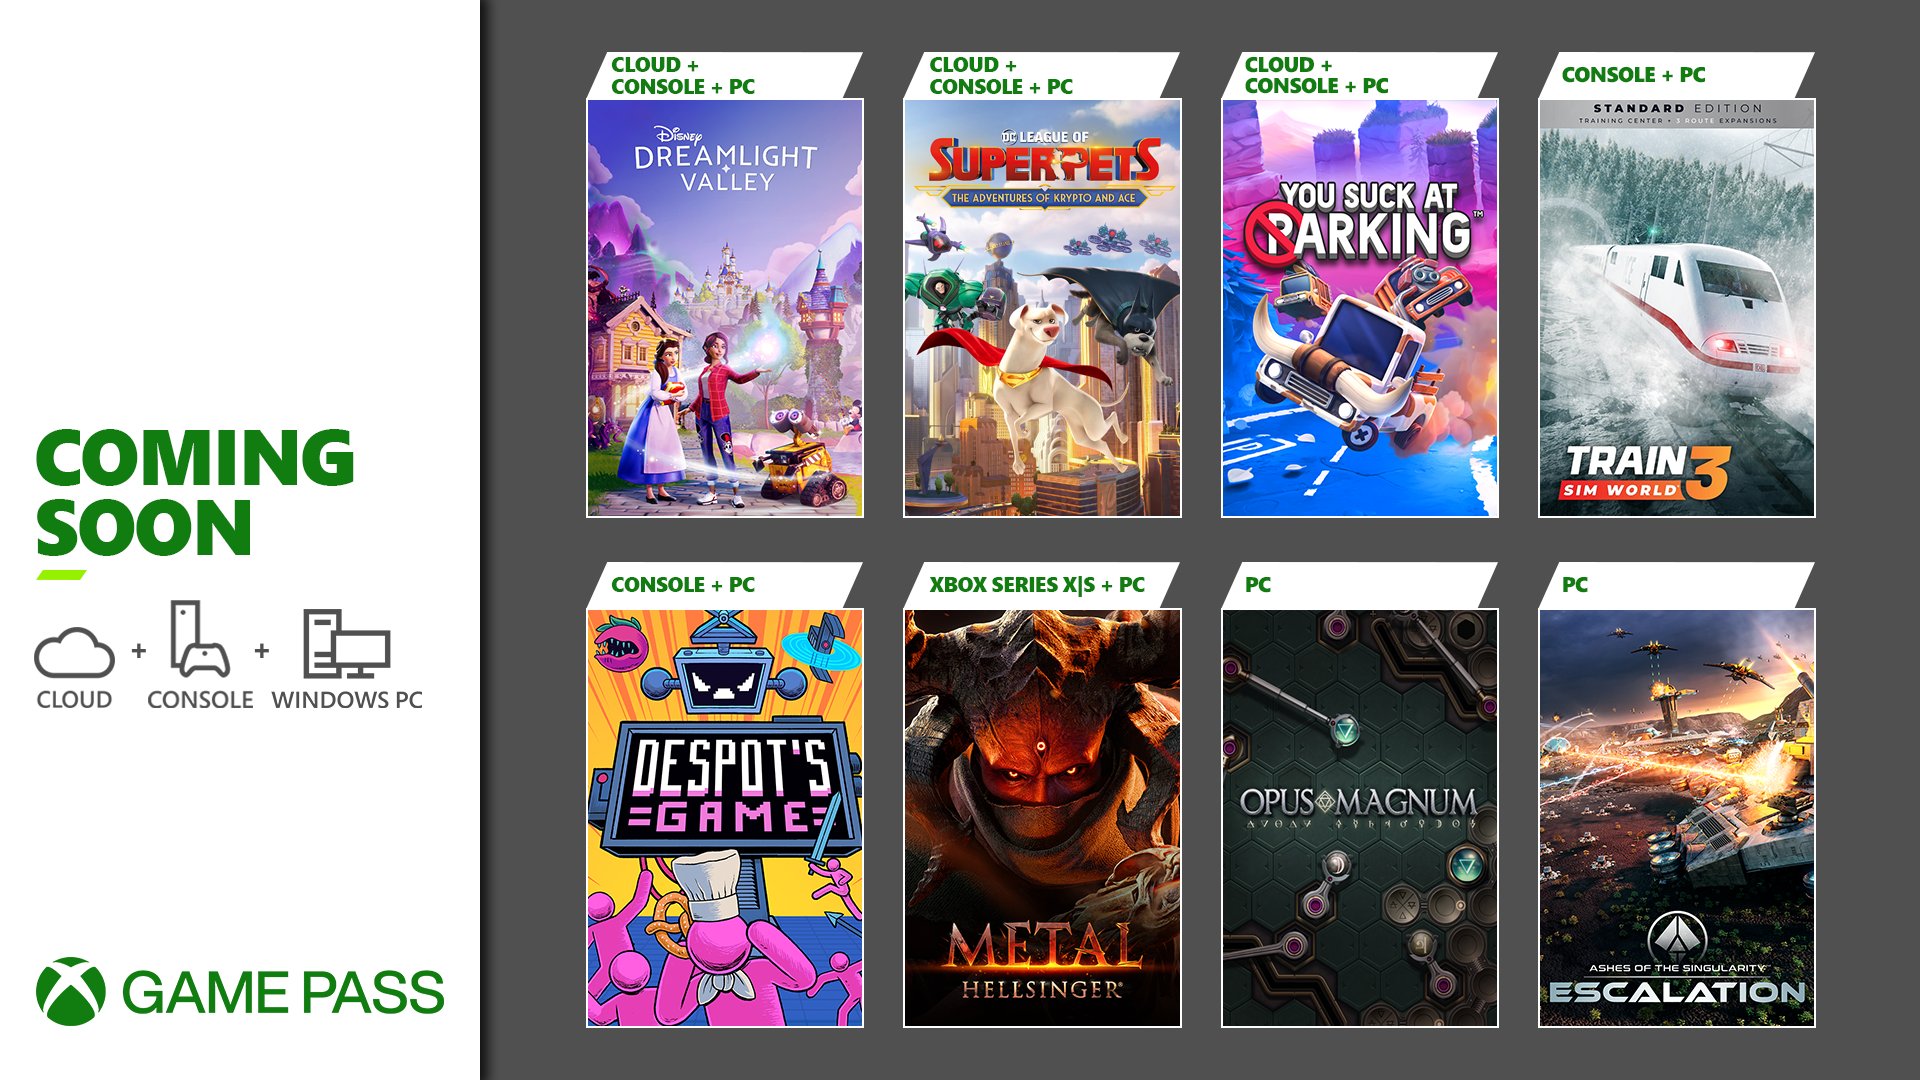 Estos son los nuevos juegos que llegan a Xbox Game Pass en septiembre - Como era de esperar, Microsoft ha desvelado los nuevos títulos que llegan a Xbox Game Pass en septiembre